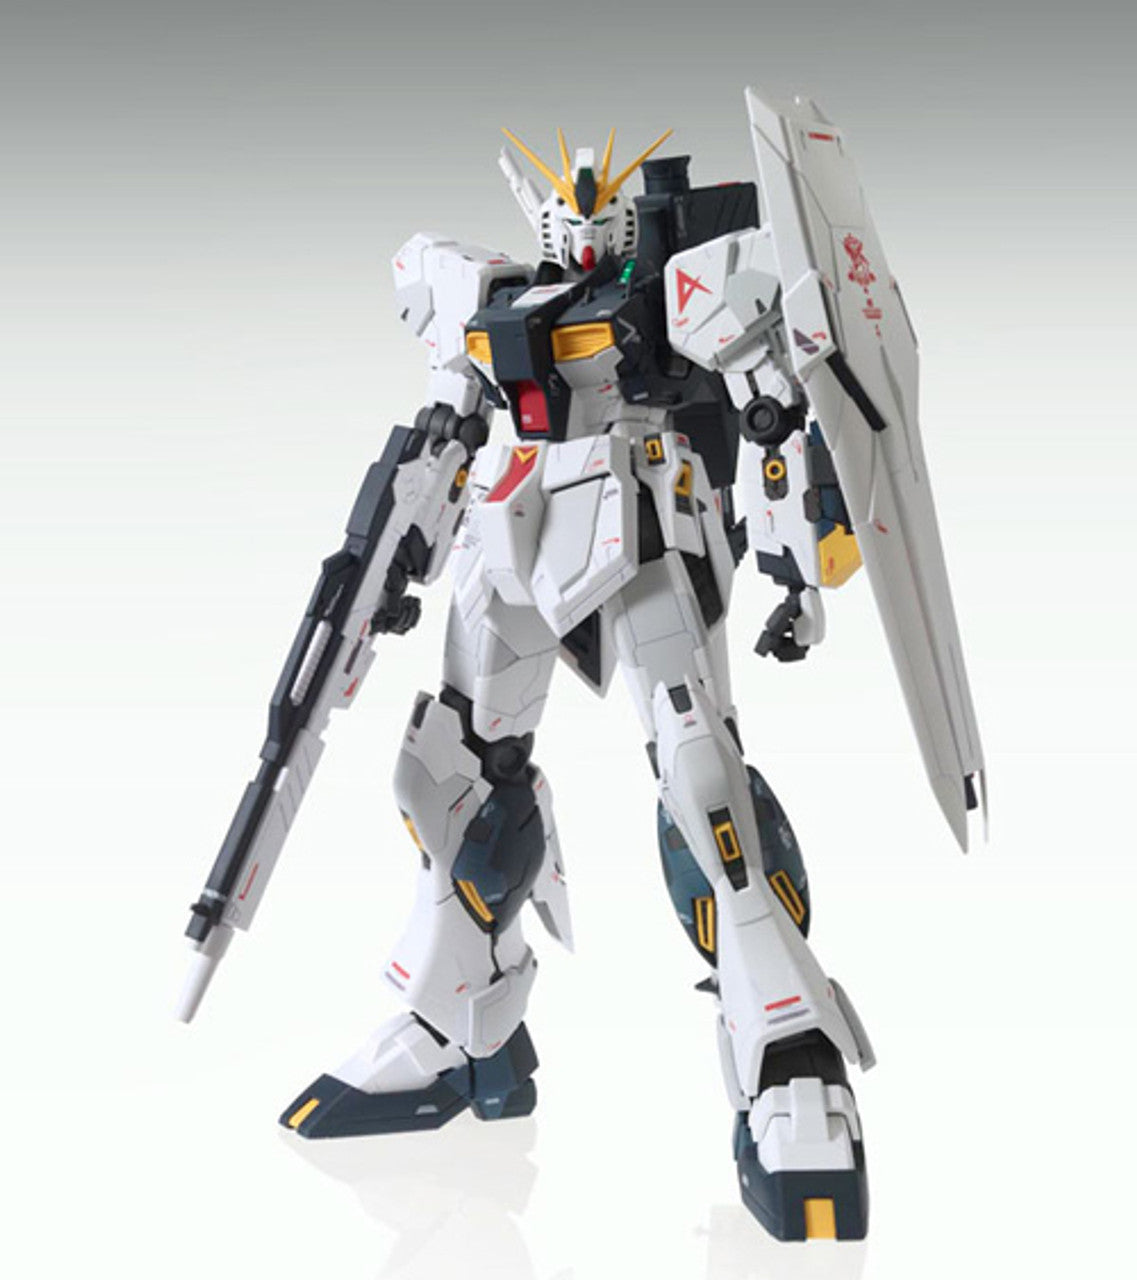 Bandai MG Nu Gundam Ver. Ka U.C.0093 E.F.S.F. (Londo Bell Unit) 1/100 scale kit